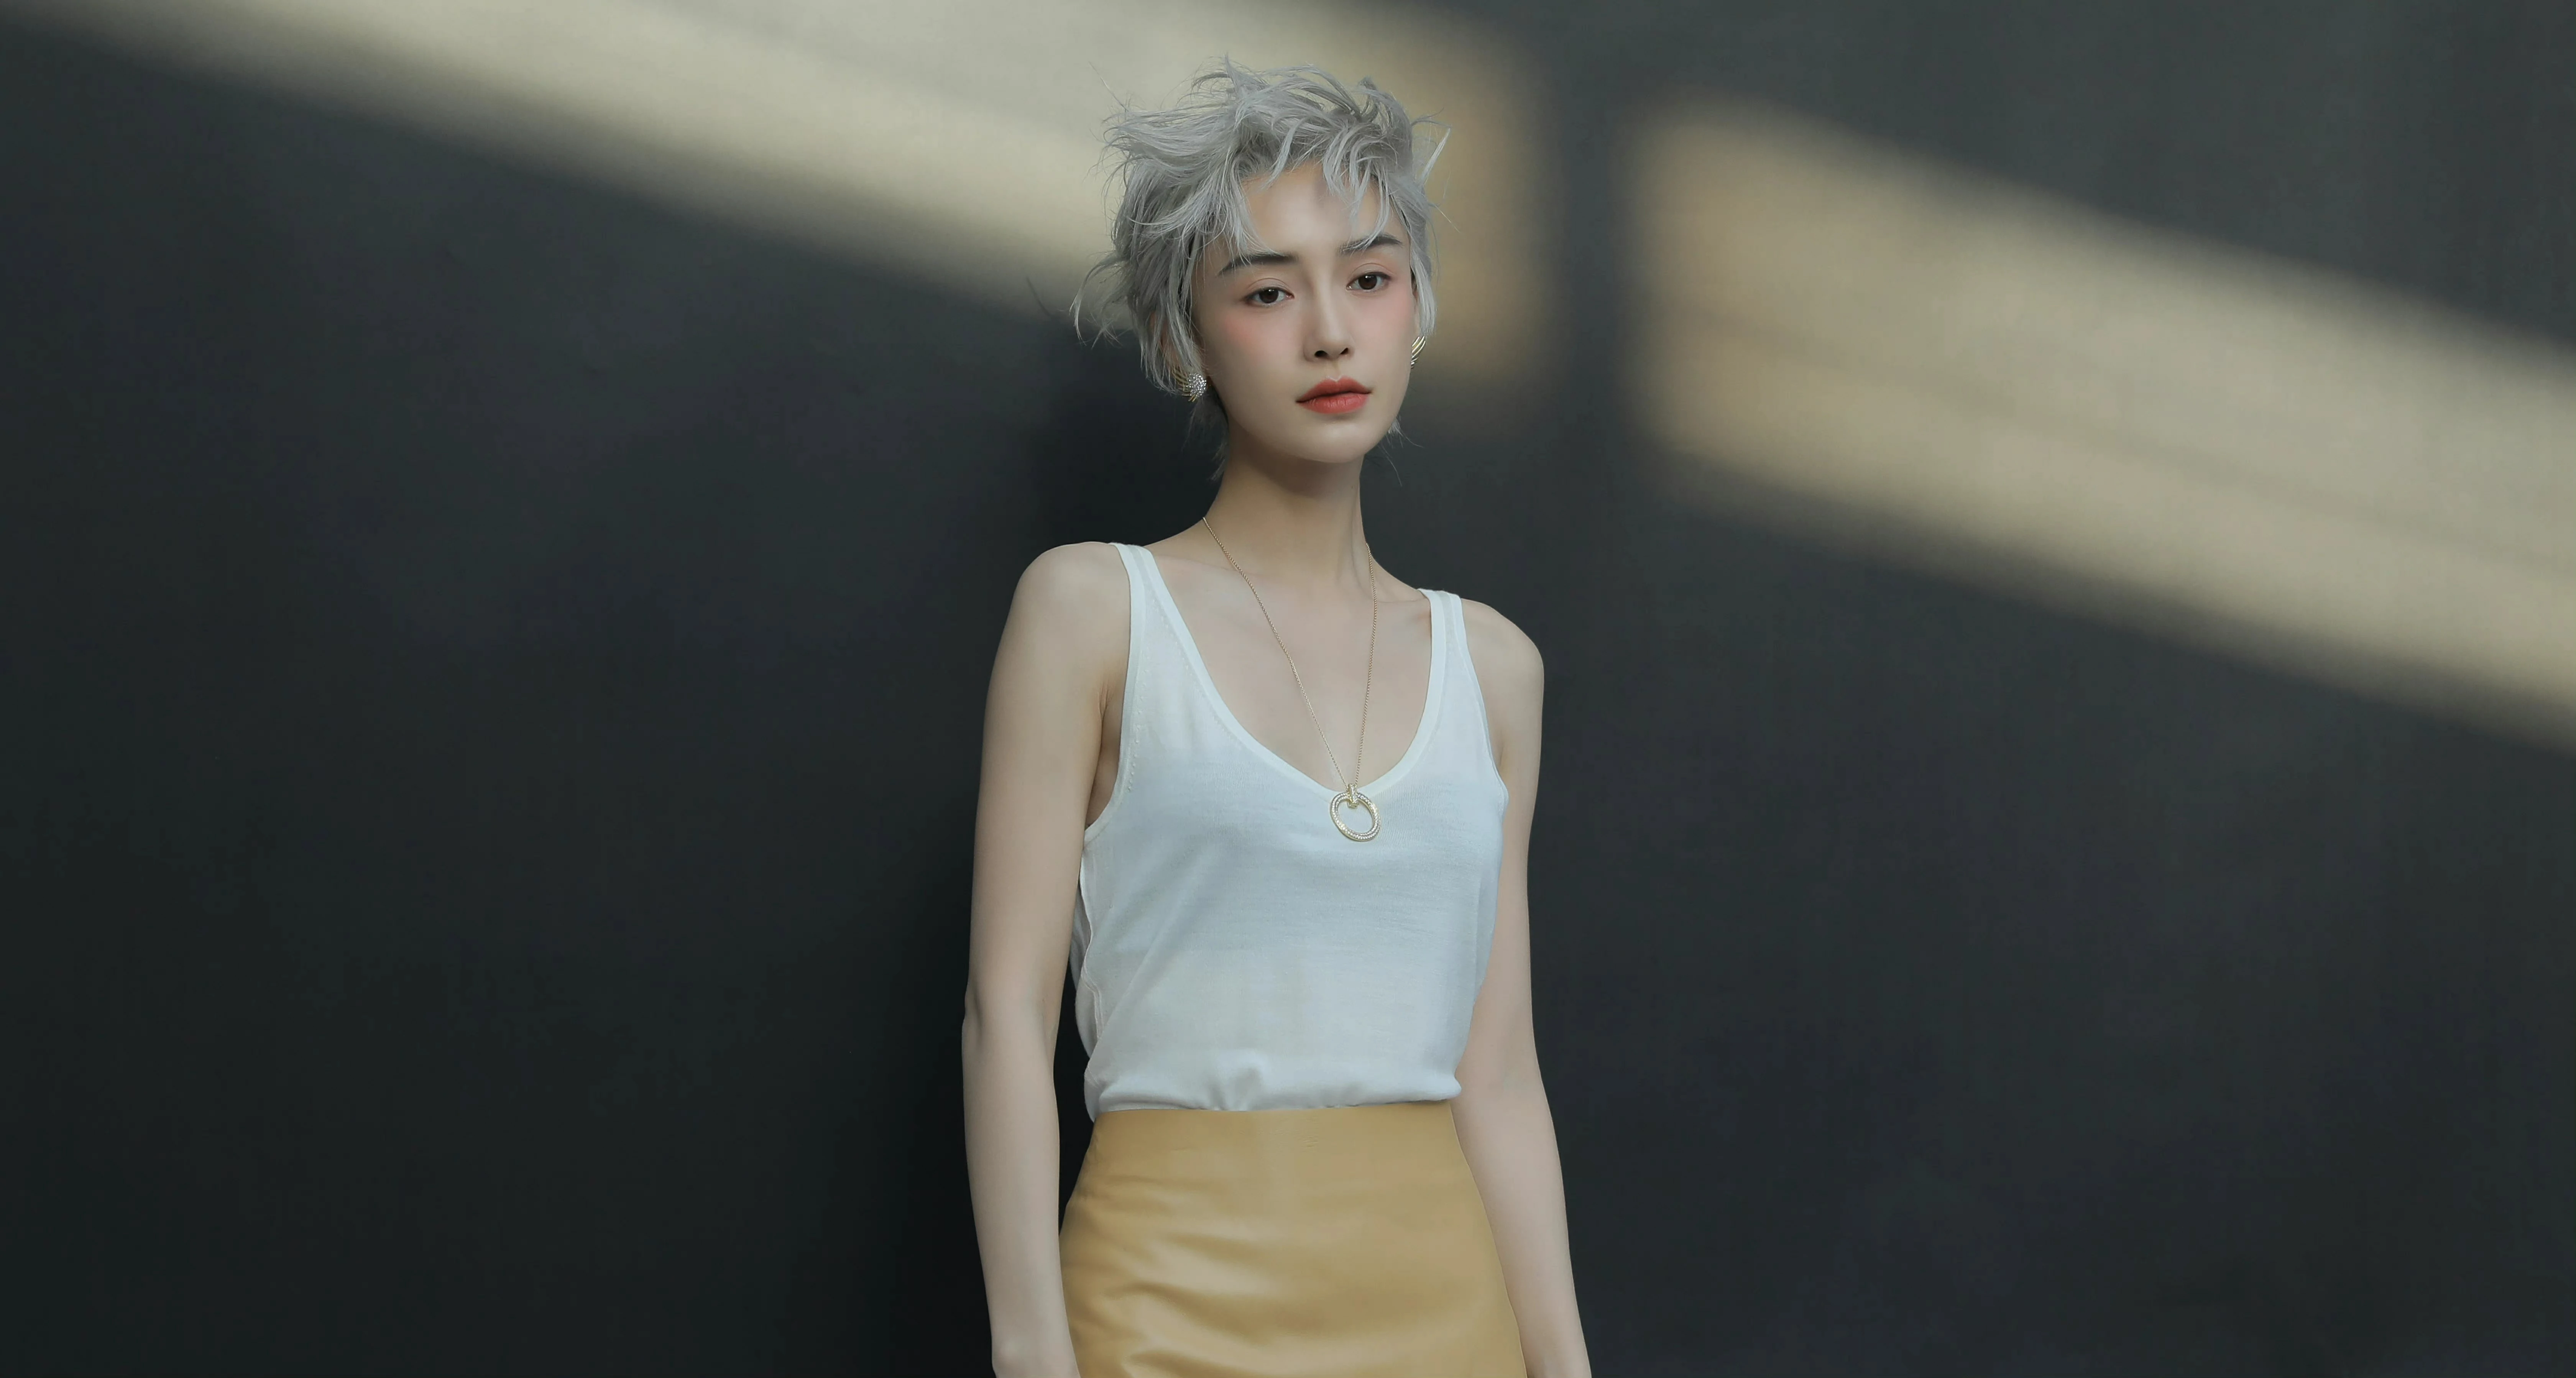 杨颖（Angelababy）银色短发造型大片酷飒前卫 妆容精致撕漫感满满,7